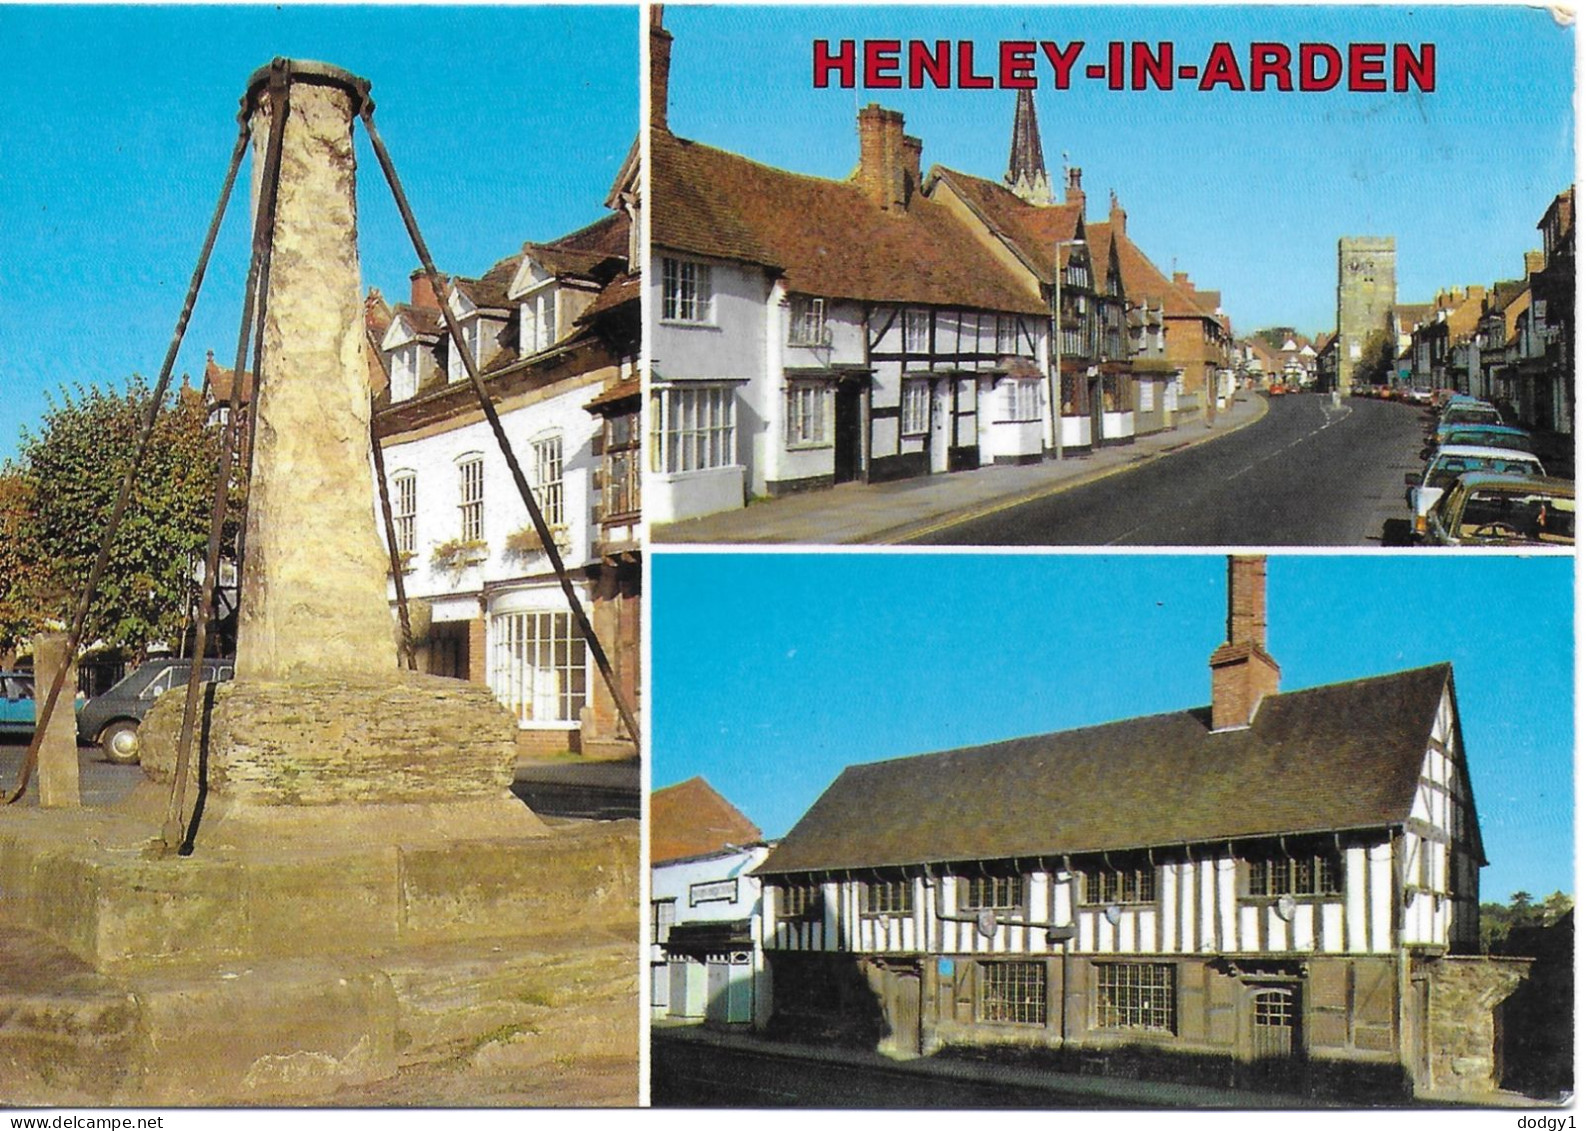 SCENES FROM HENLEY-IN-ARDEN, WARWICKSHIRE, ENGLAND. UNUSED POSTCARD   Hold 11 - Stratford Upon Avon